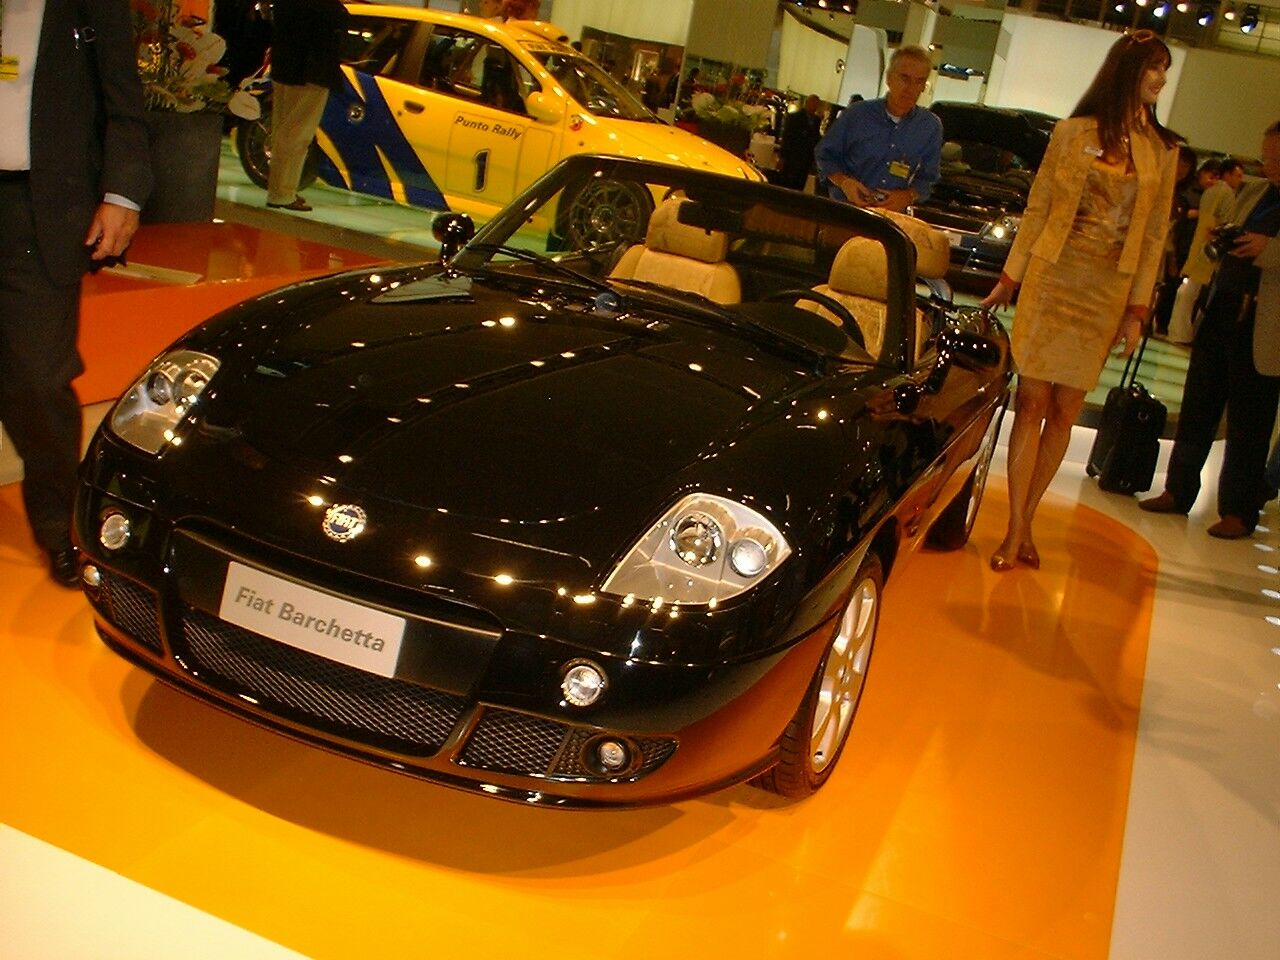 Fiat Barchetta at the 2003 Frankfurt IAA